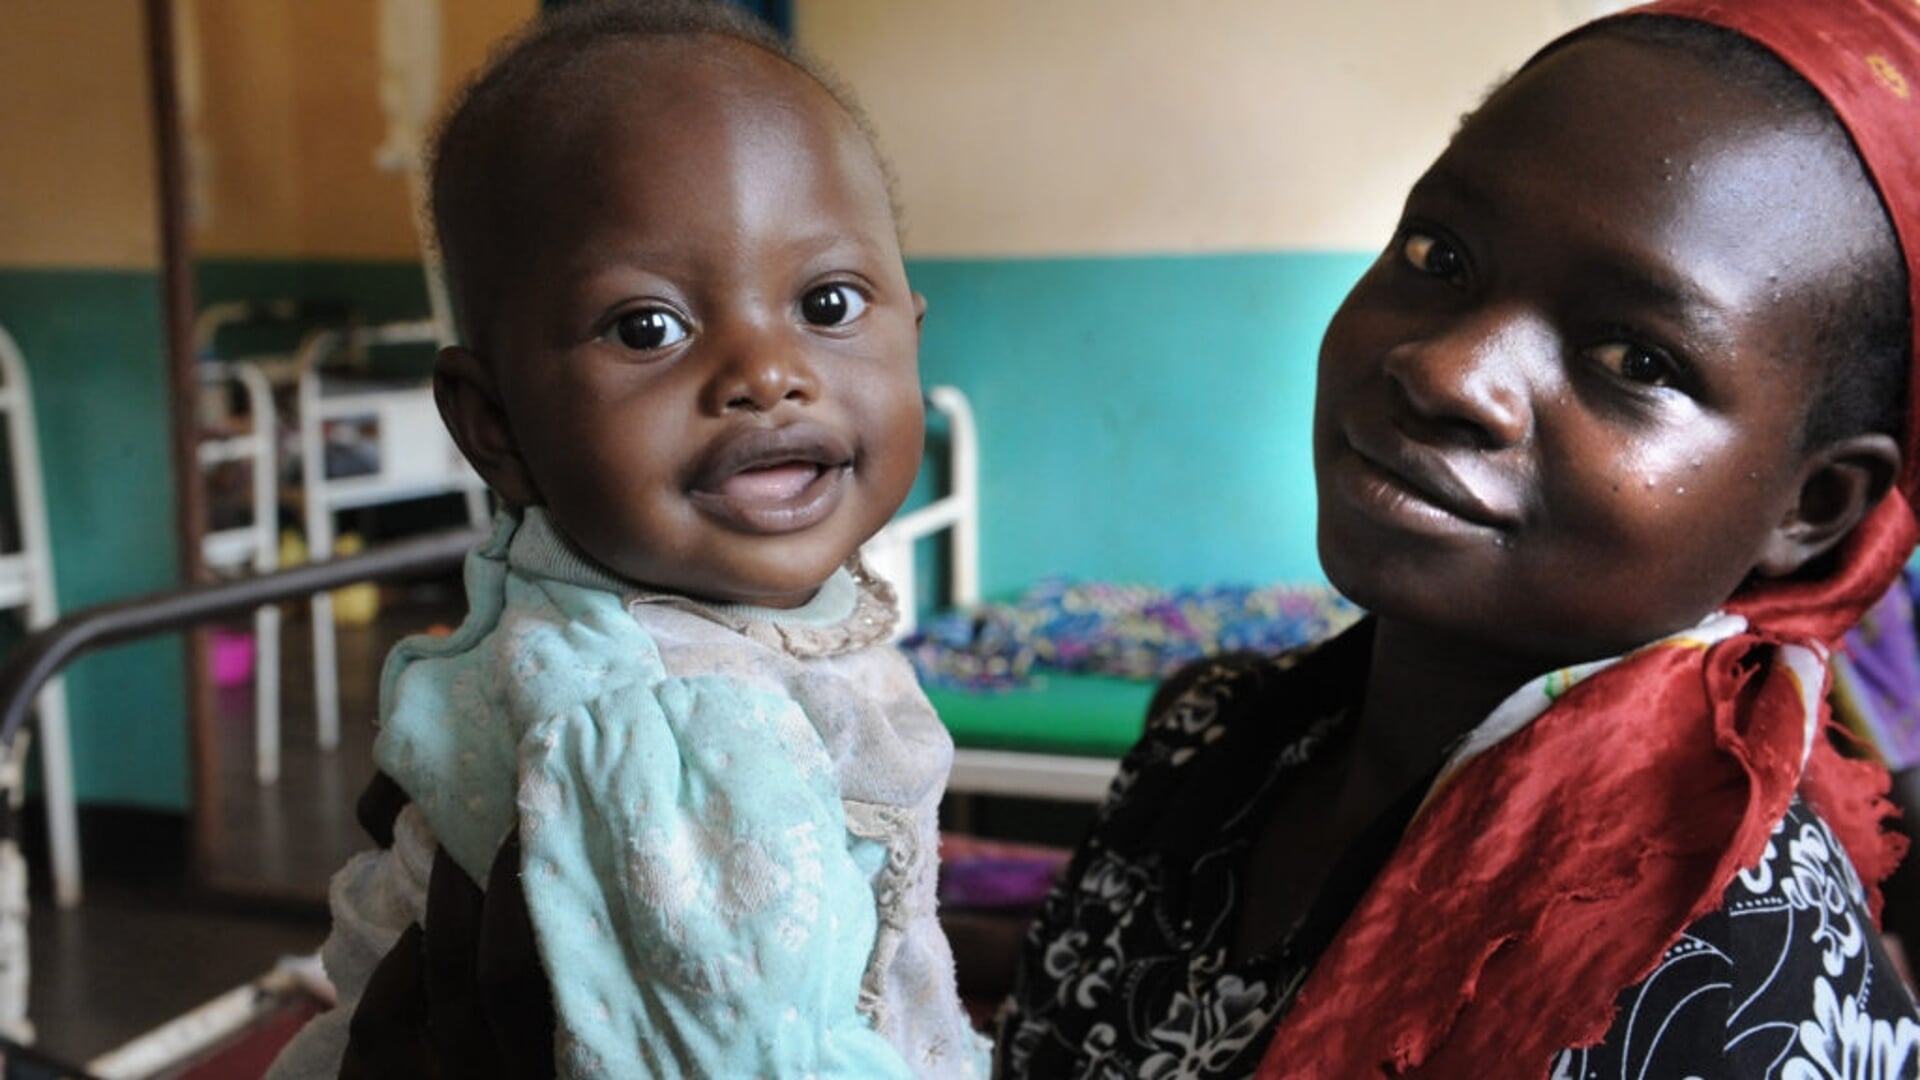 De opbrengst van de actie komt ten goede aan een project van Cordaid waarbij gezondheidsvoorzieningen voor moeder en kind in de Borana-zone (Ethiopië) worden verbeterd.